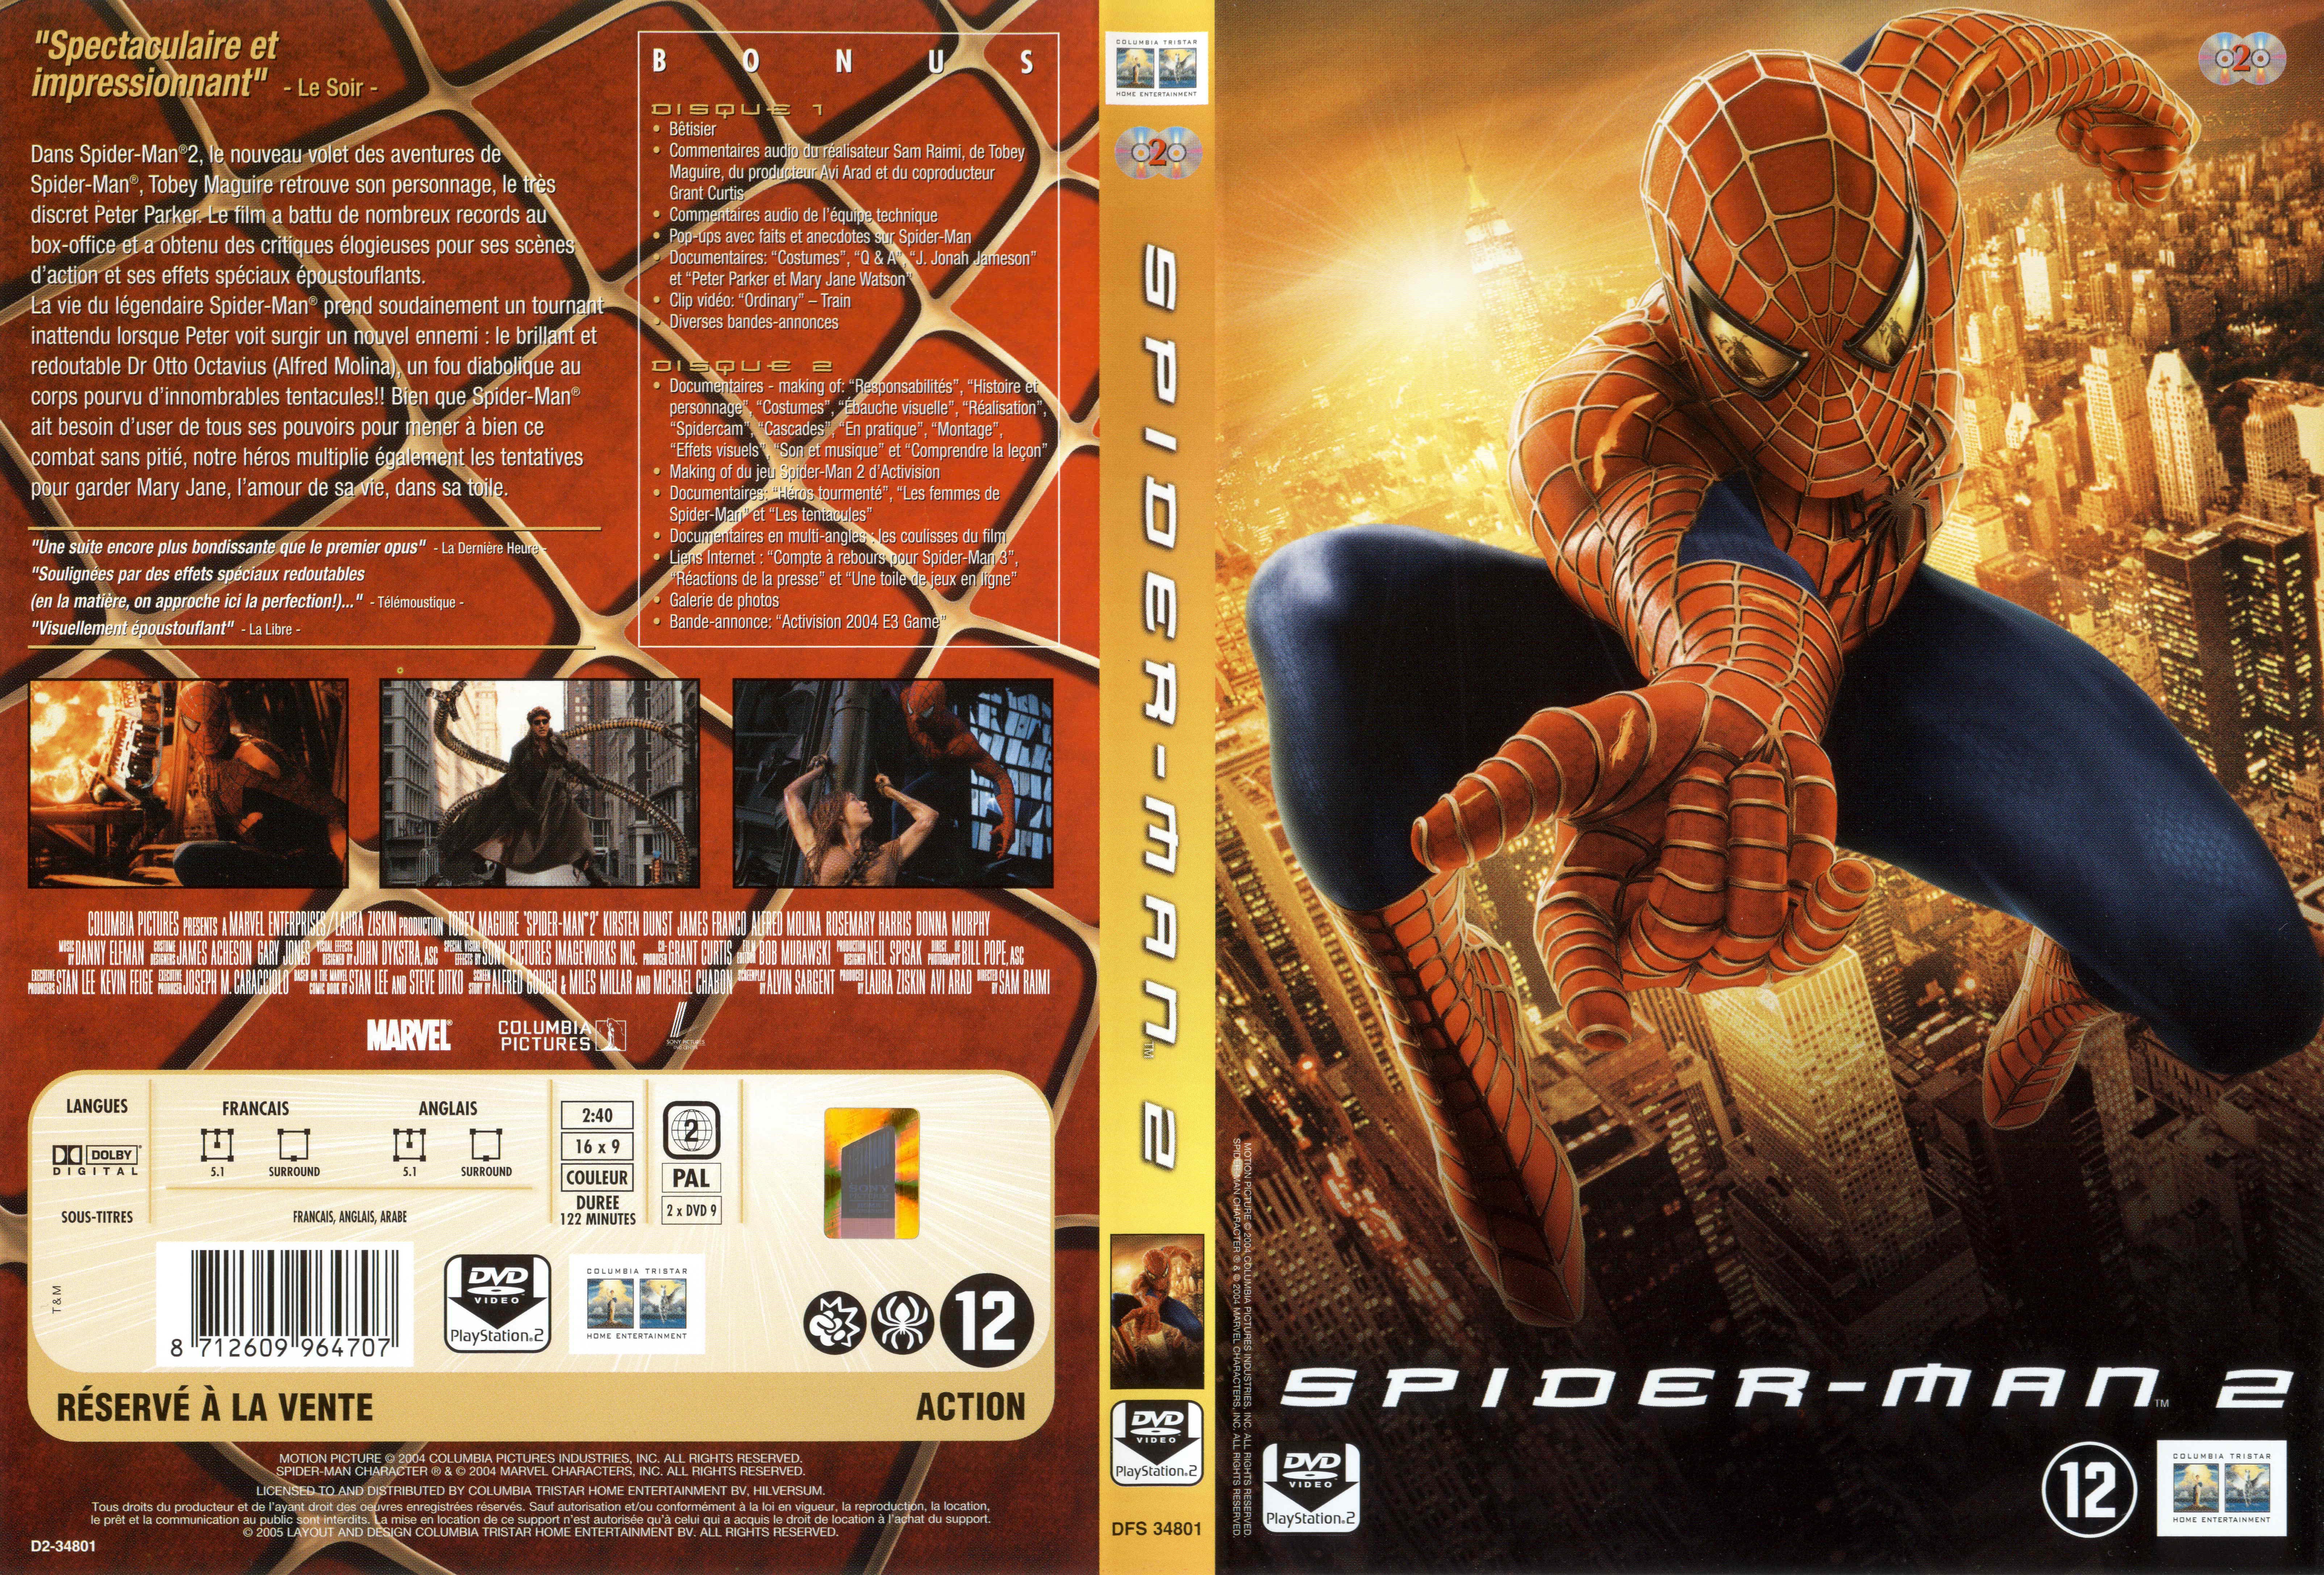 Jaquette DVD Spiderman 2 v4